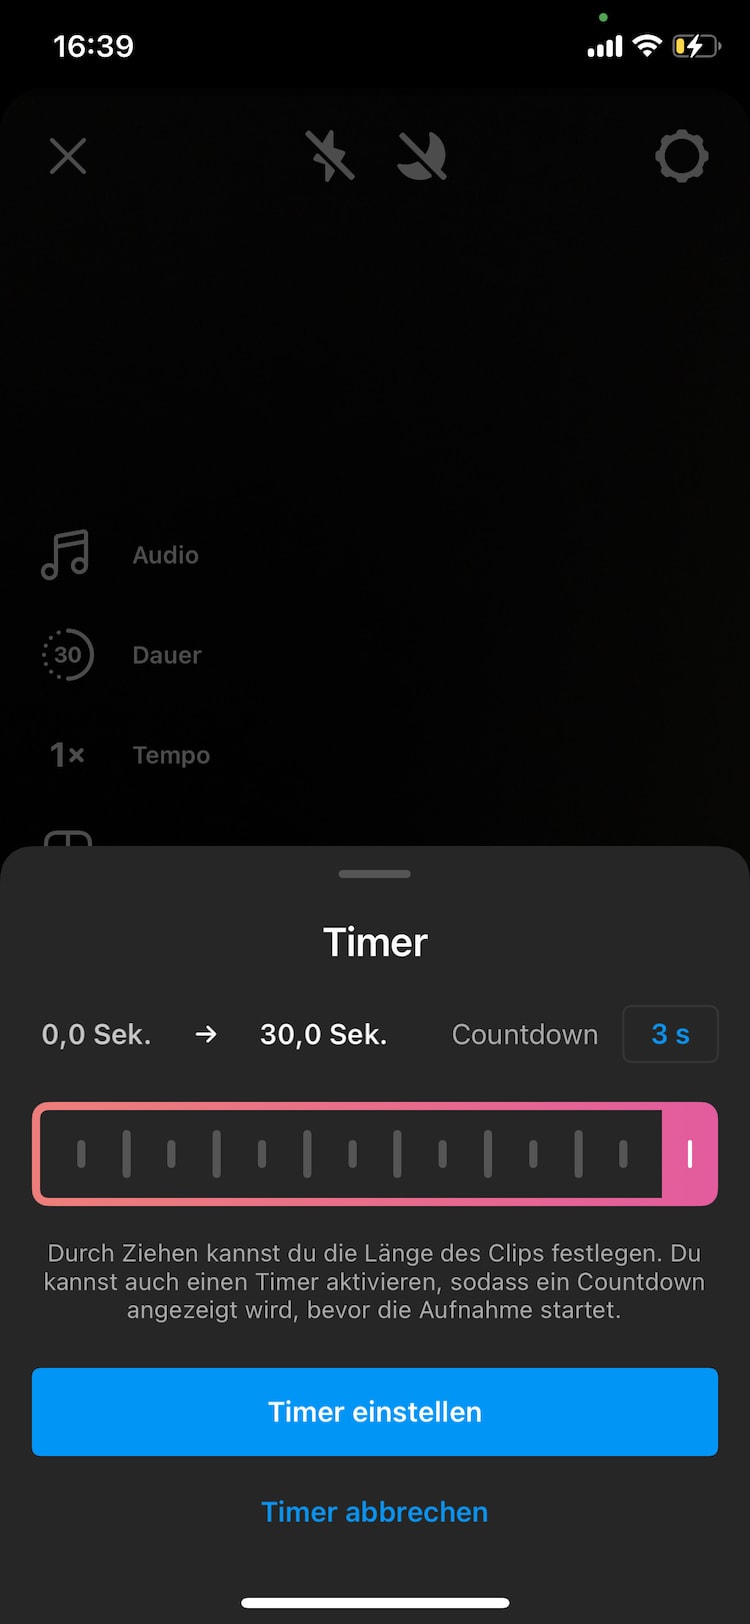 Diese Abbildung zeigt für die technische Funktion der Instagram Reels den Timer inklusive Countdown und die Zeit zum automatischen Stoppen der Aufnahme für das Video.